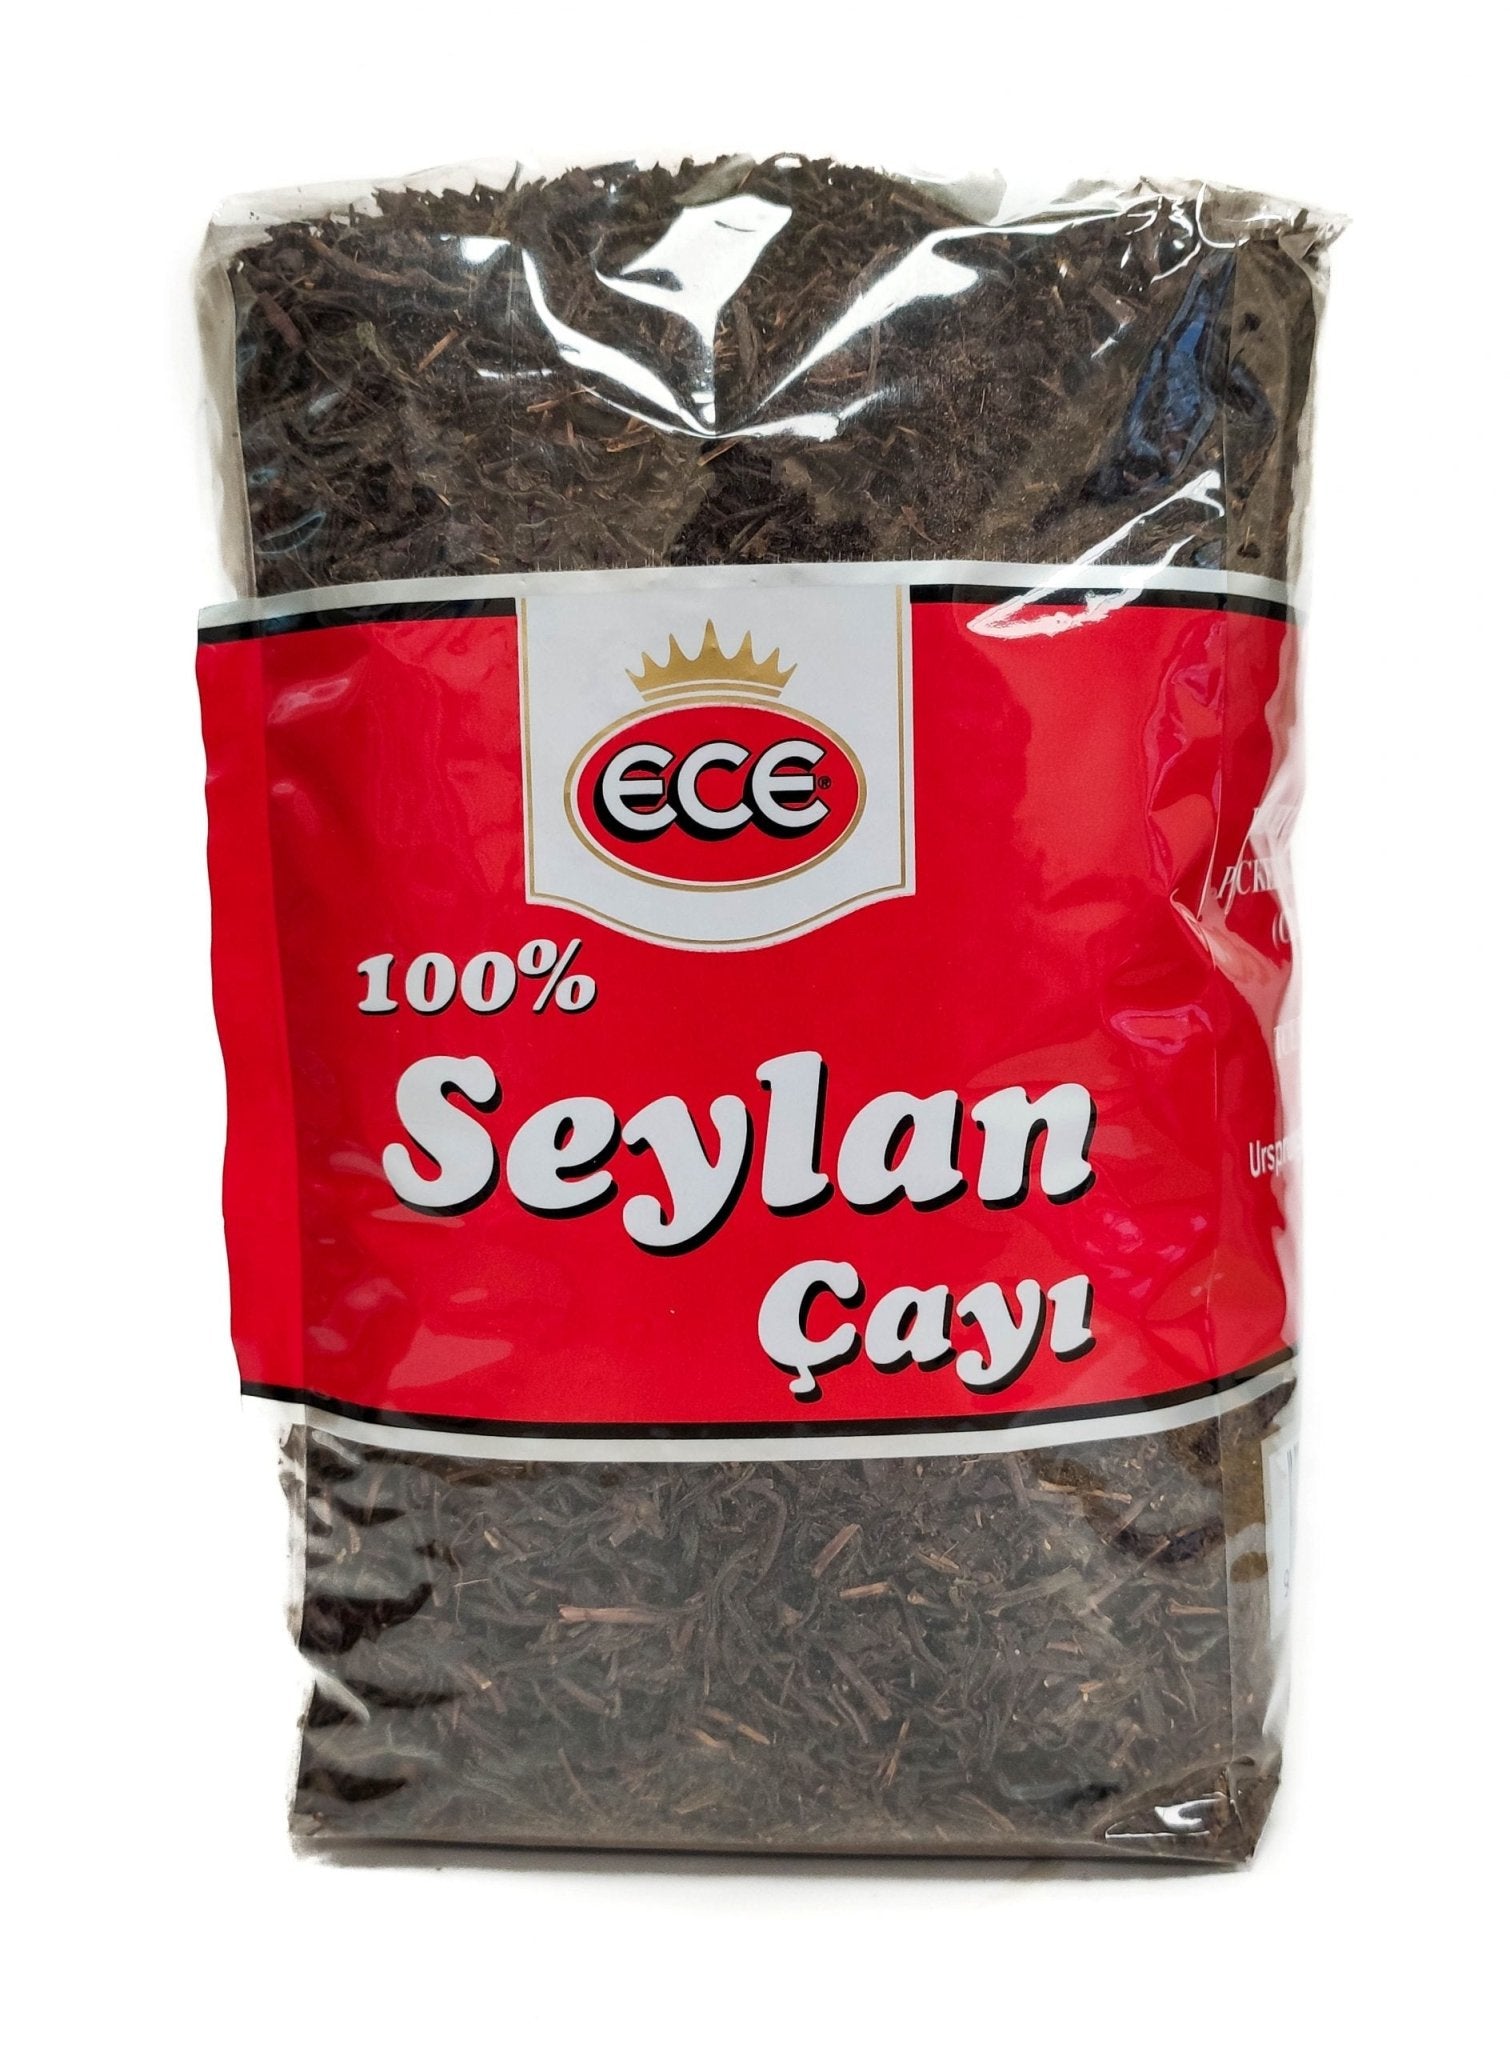 Ece Ceylon Tea (800G) - Aytac Foods